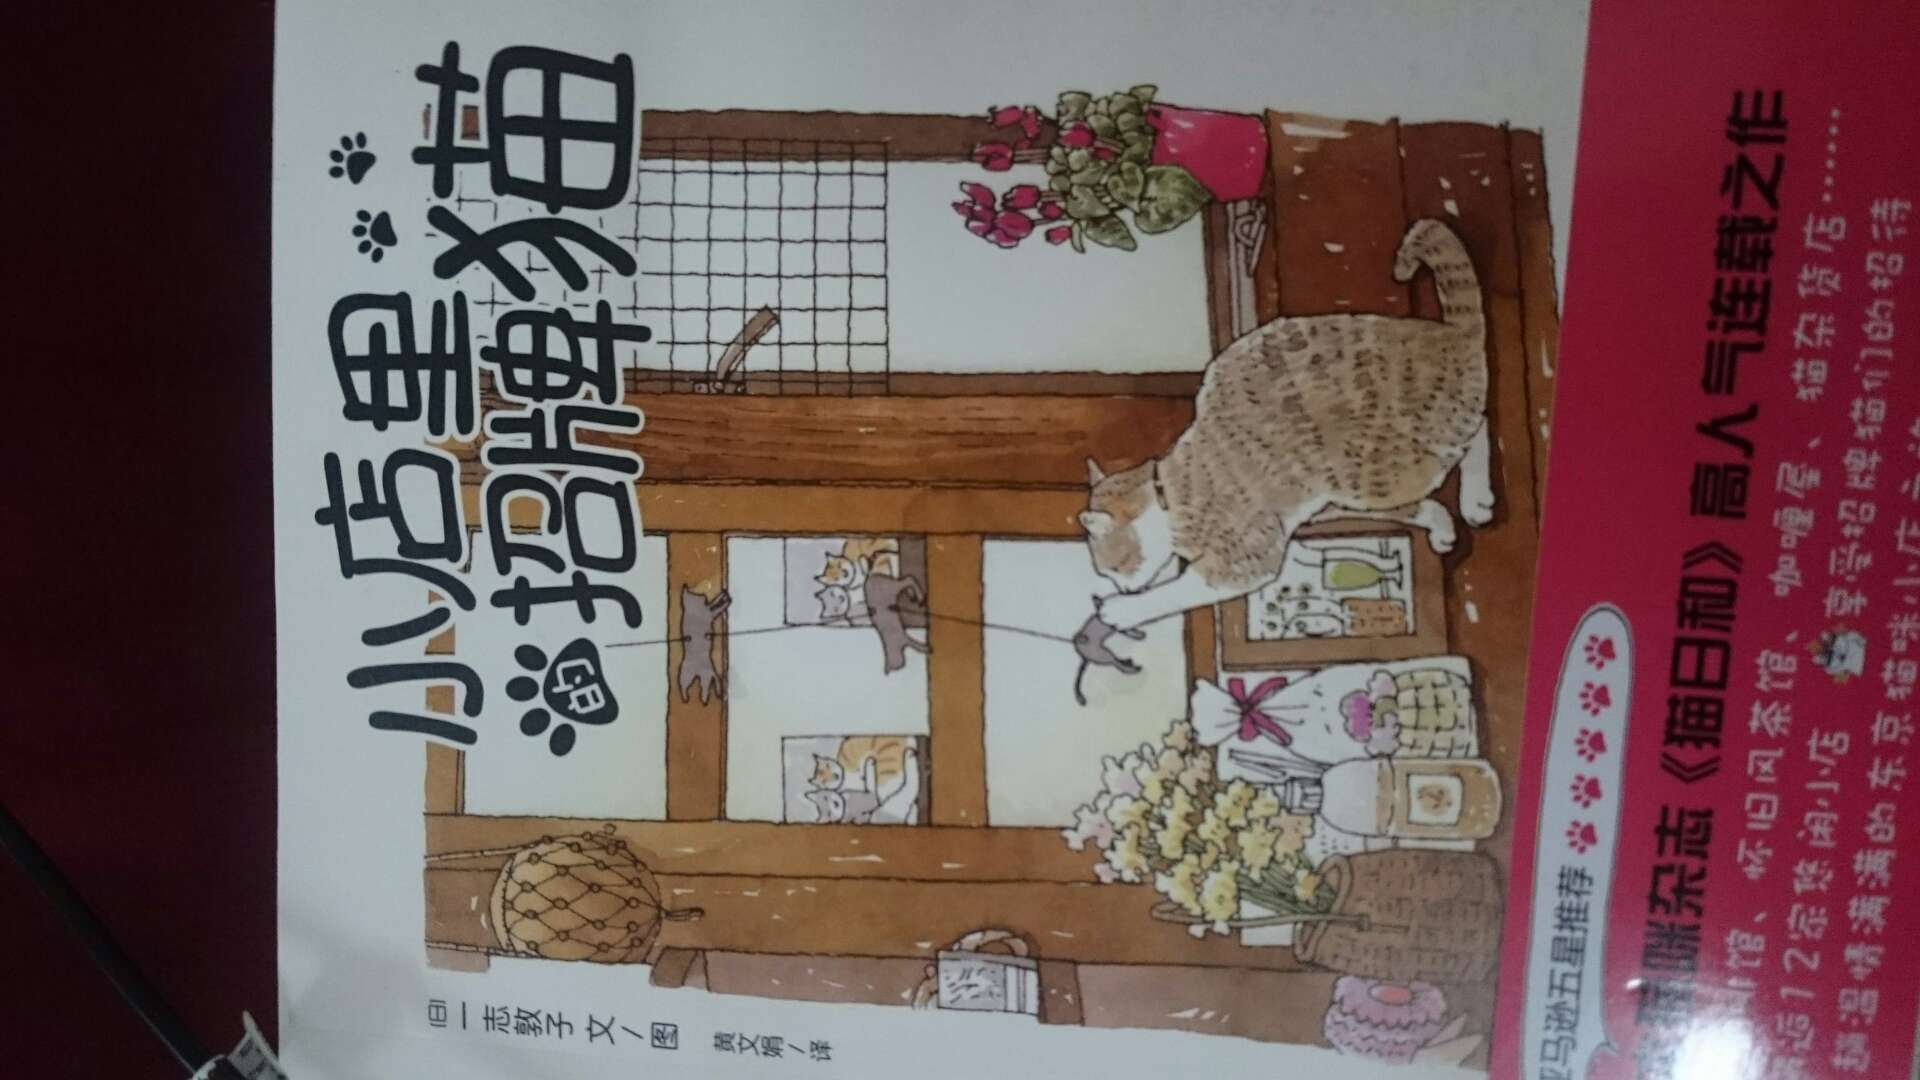 差点忘了评了。这书主要介绍一些日本的猫主题店的来历和一些经营的一些事情。实话，有点无聊。